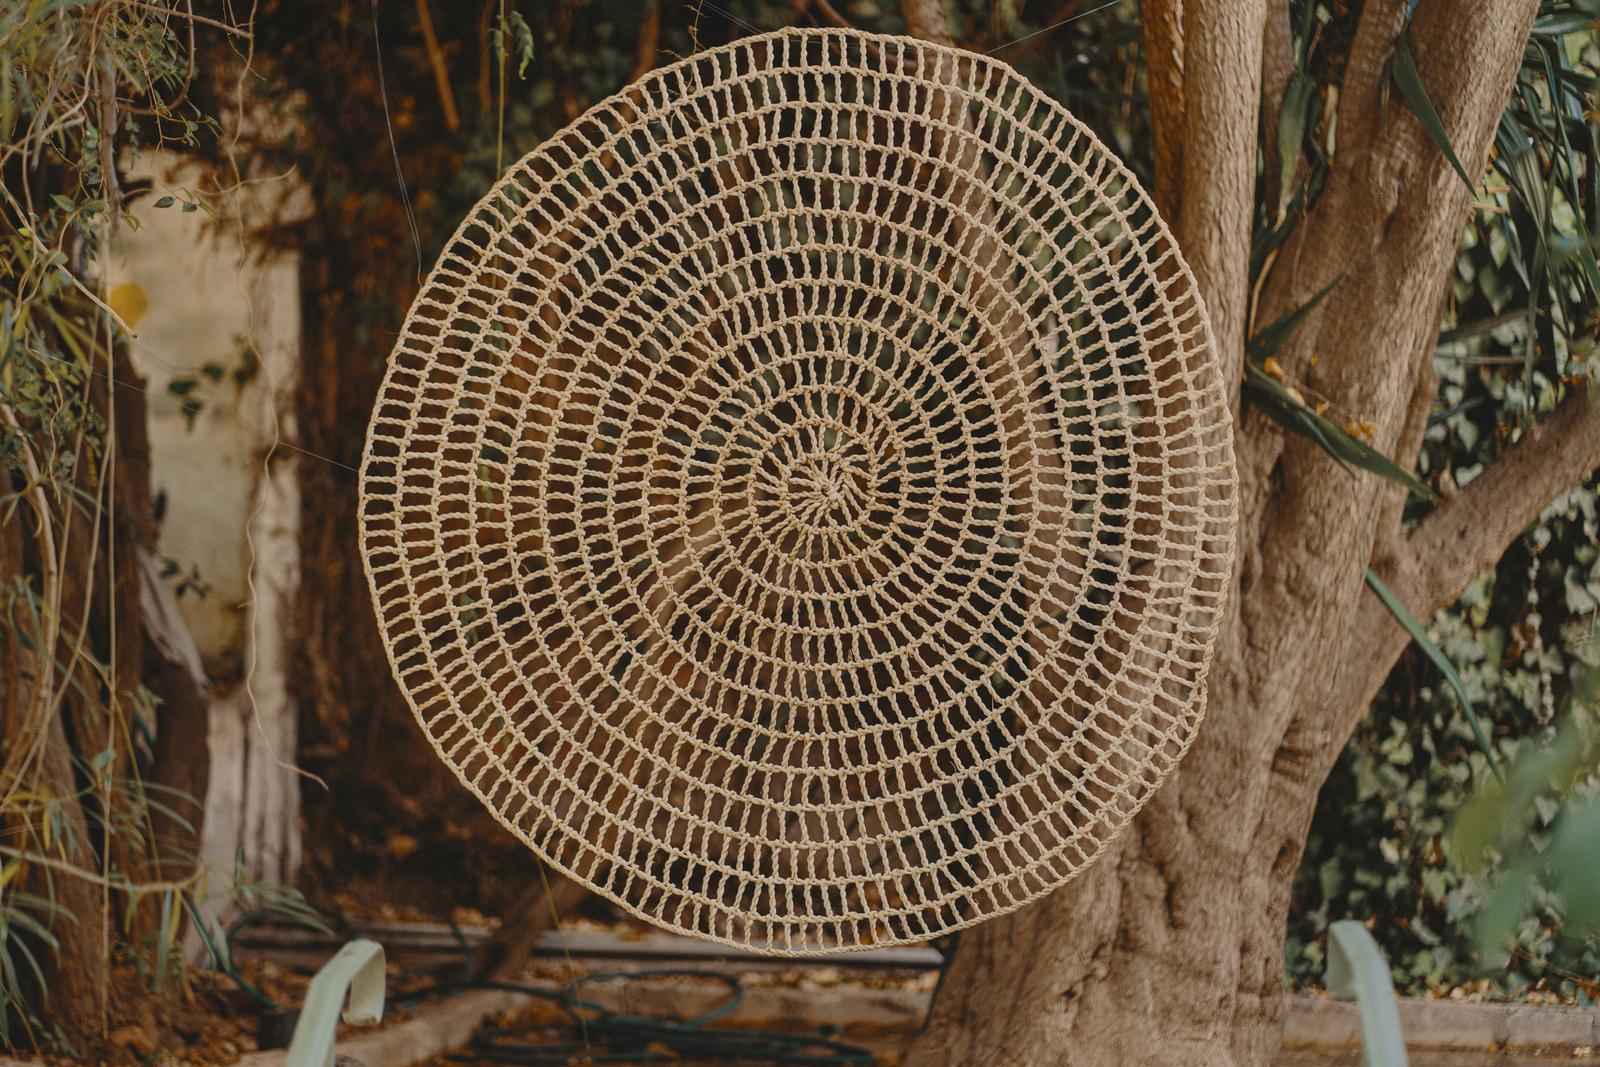 Der Wandteppich CHABKA ist ein umweltfreundlicher Spinnennetzteppich aus natürlichen Palmfasern. 

Die CHABKA-Matte bietet eine einzigartige Kombination aus Stil und Haltbarkeit. Die Form des Spinnennetzes verleiht jedem Raum einen kreativen Touch,